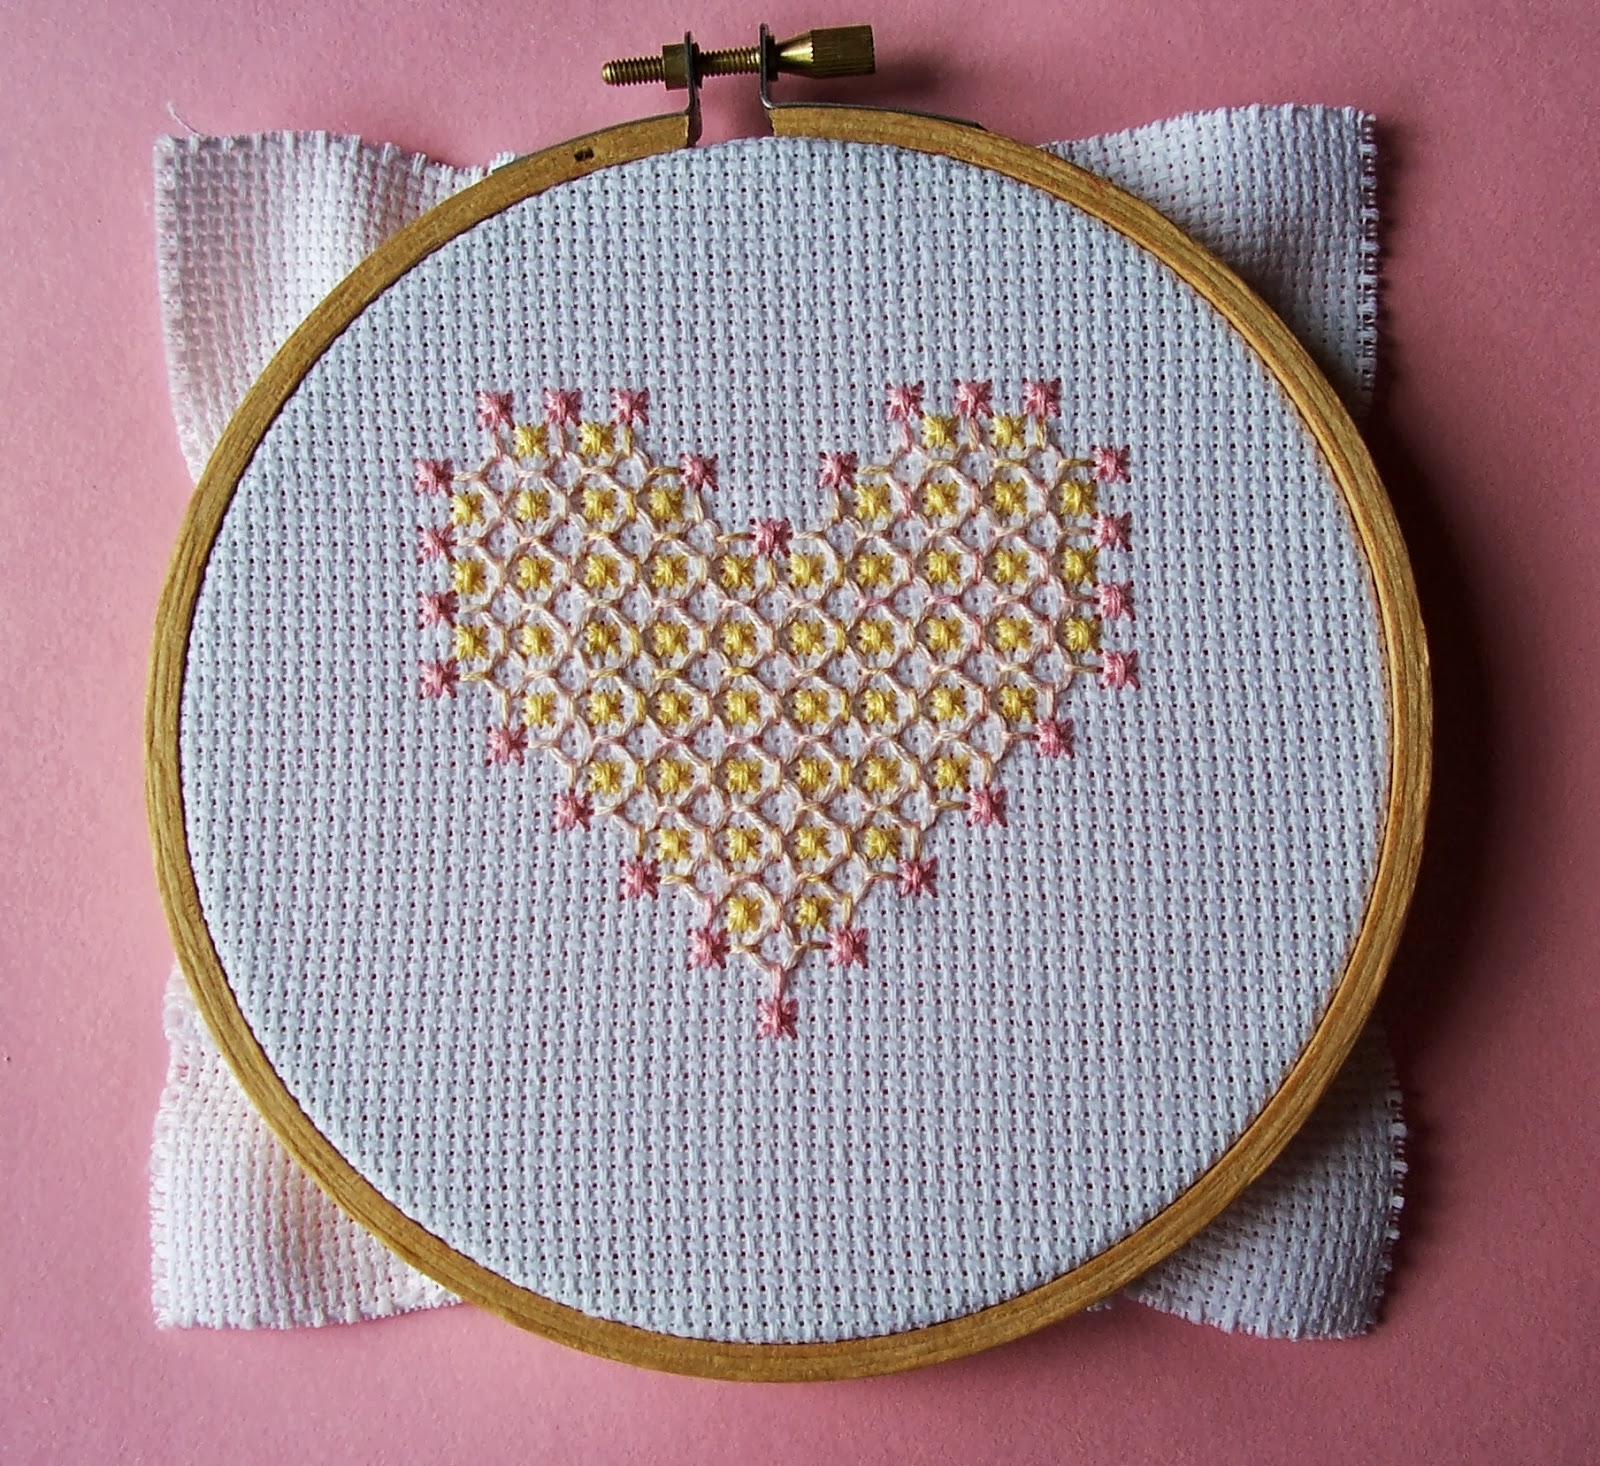 Printable Chicken Scratch Embroidery Pattern Eglantine Stitchery Chicken Scratch Heart On Aida